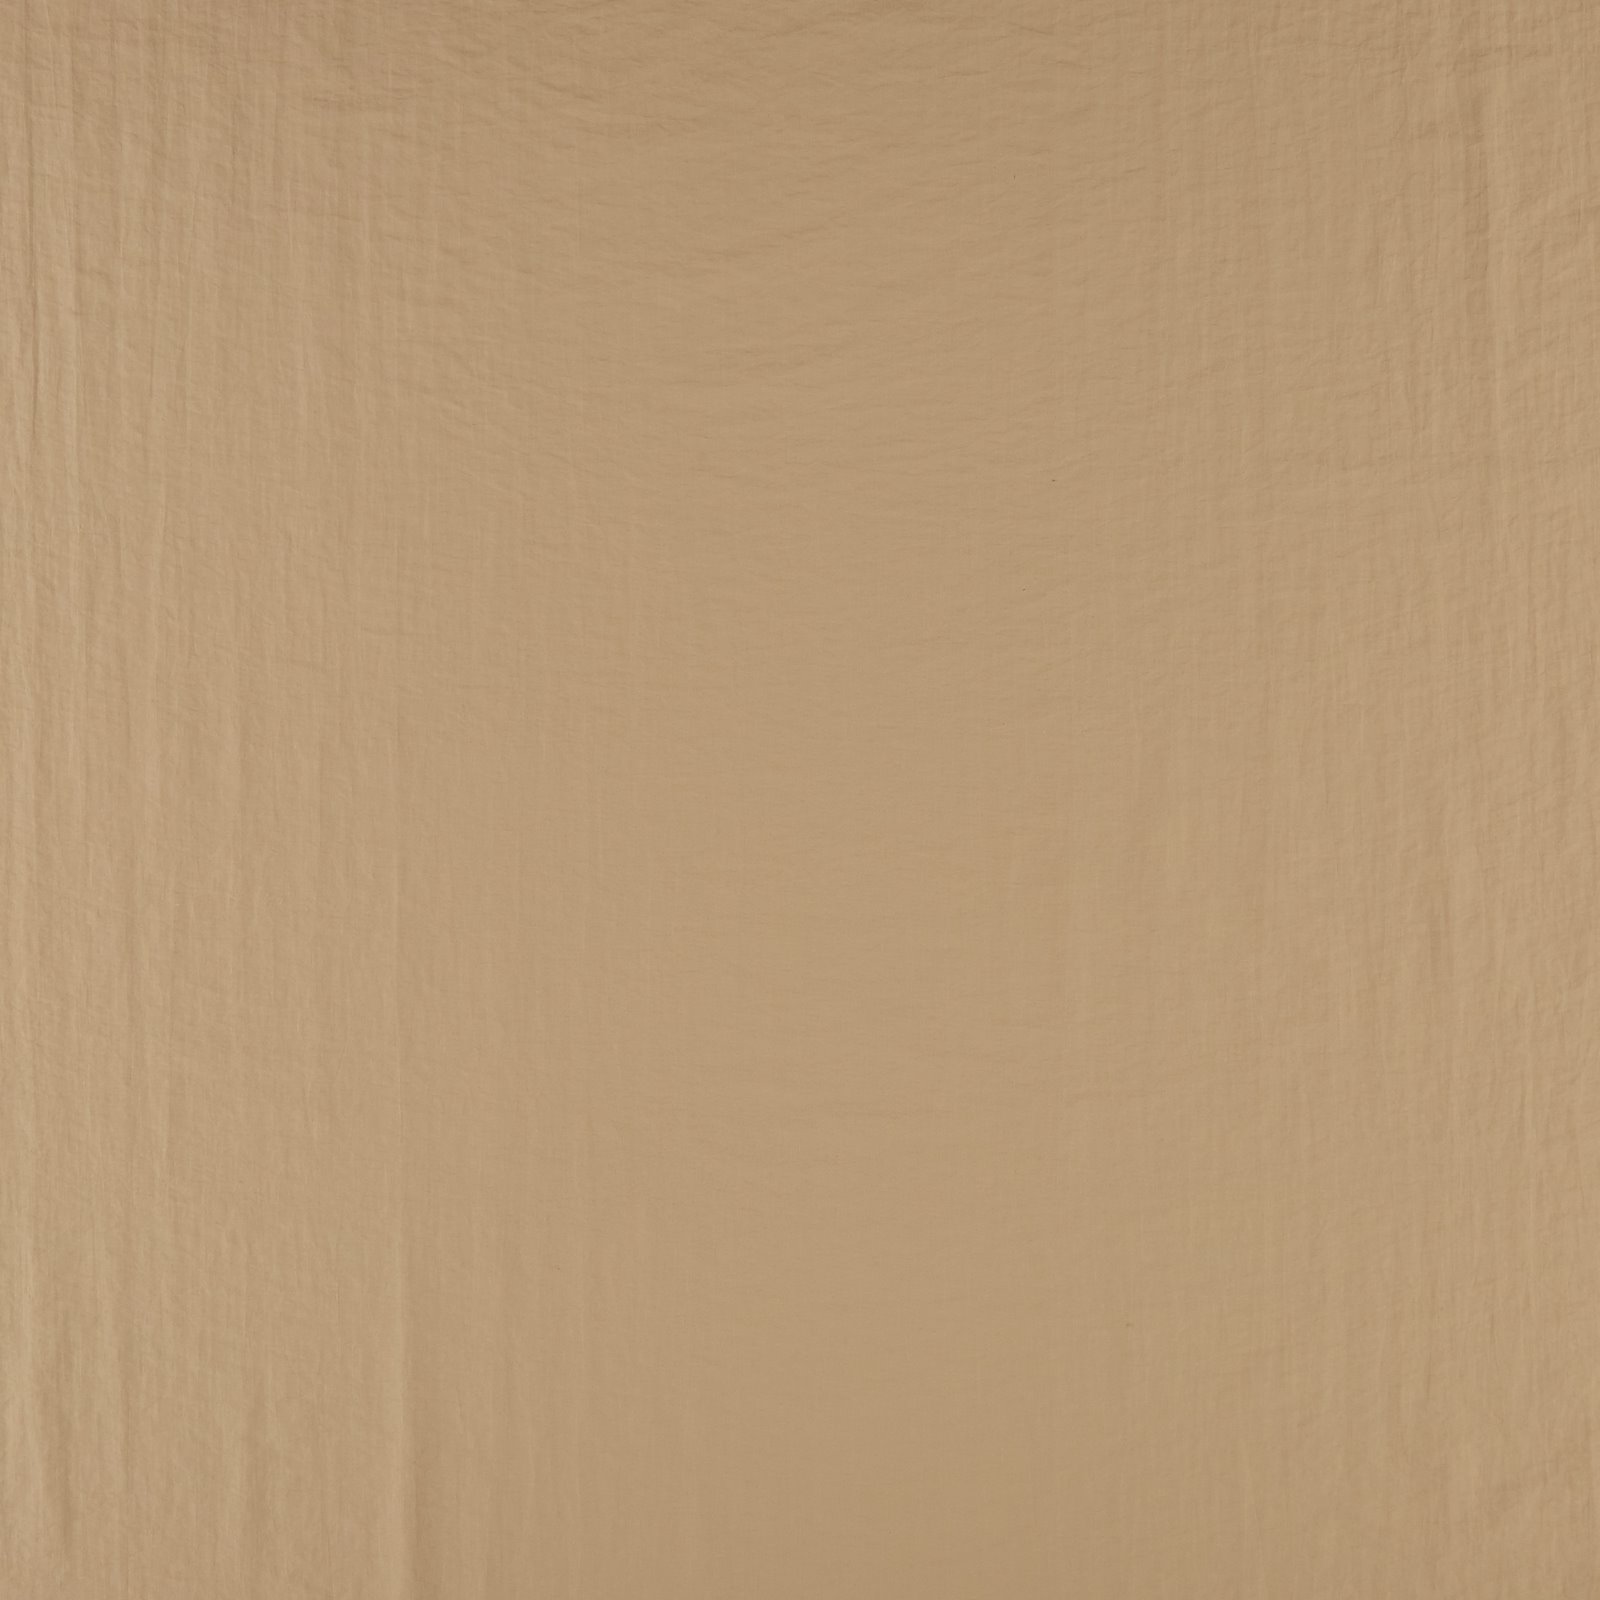 Woven taslan with structur dark beige 560285_pack_solid